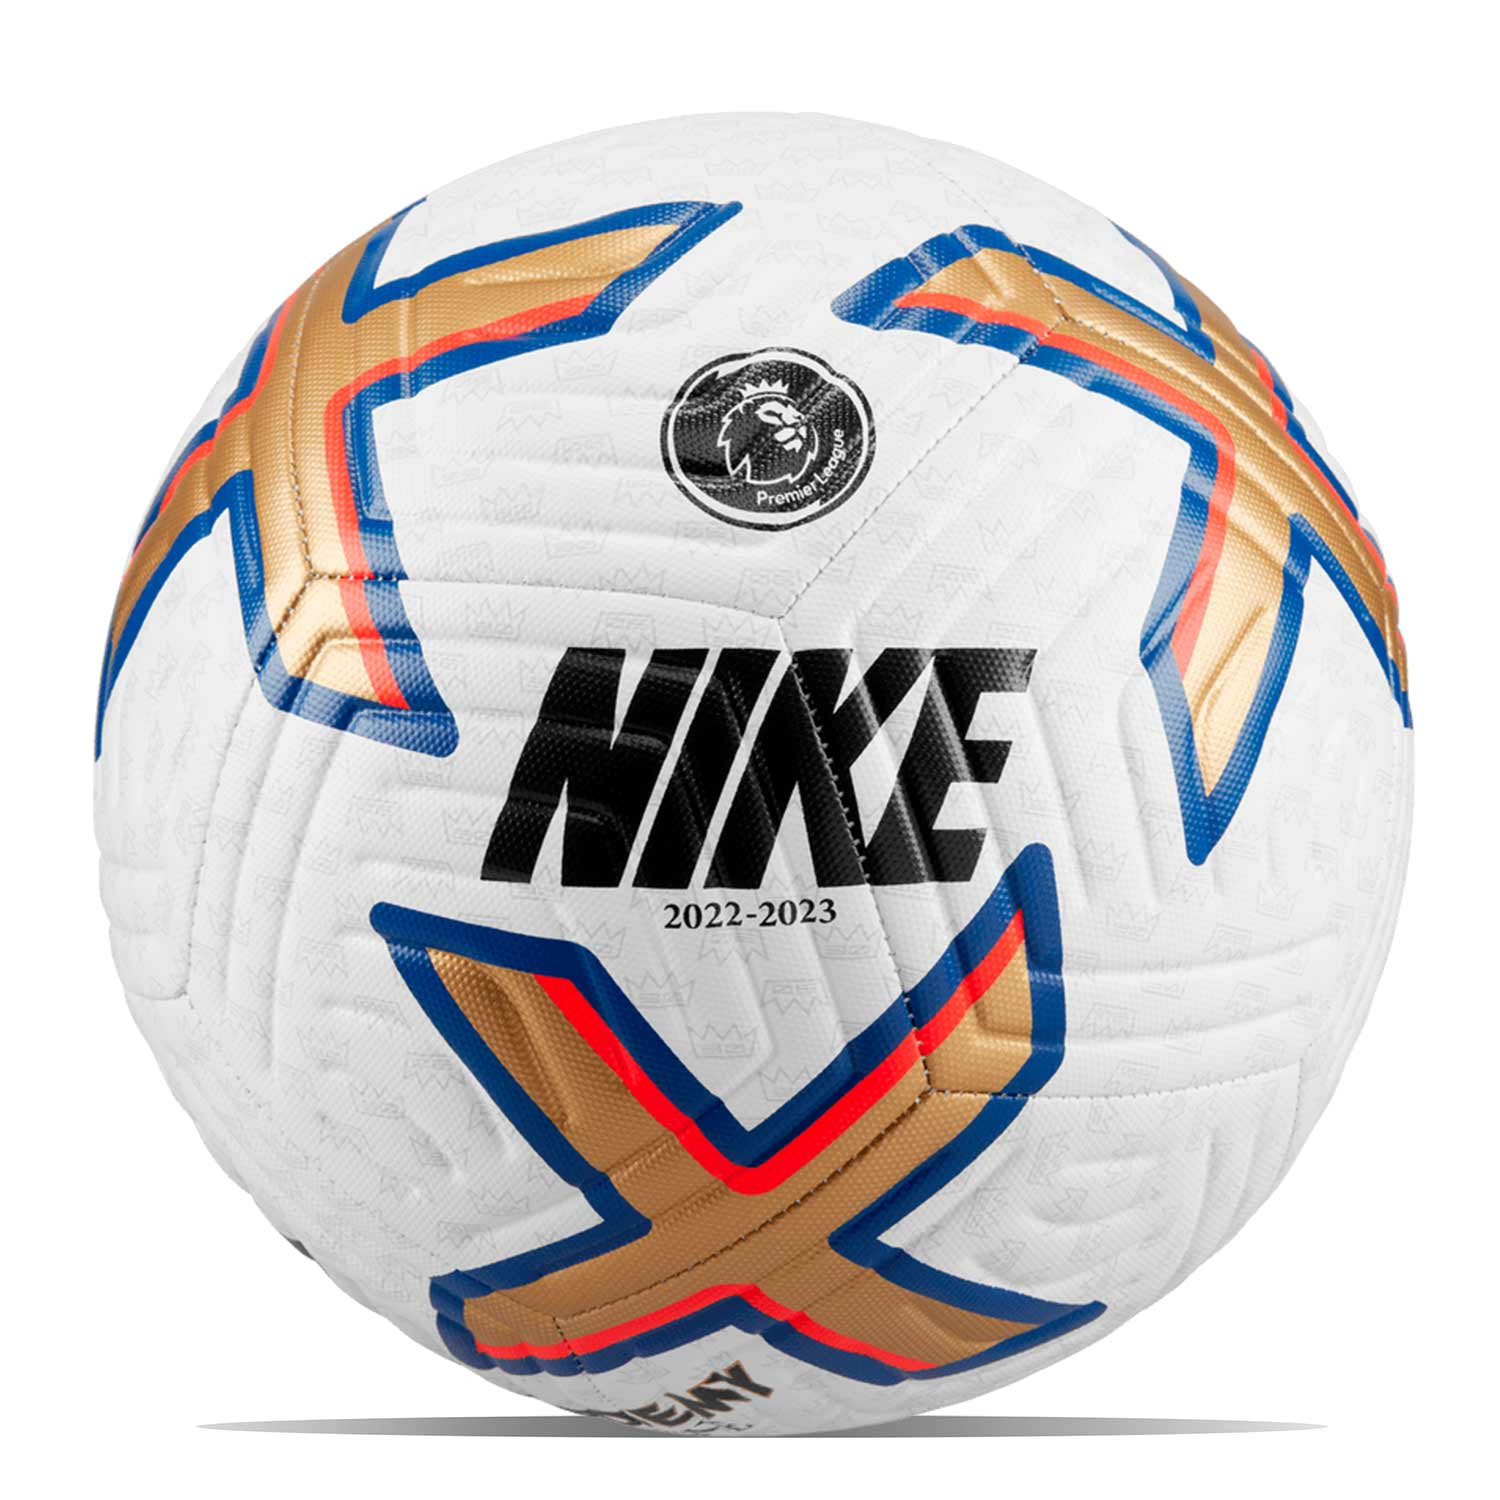 Casi muerto La cabra Billy Autónomo Balón Nike Premier League 2022 2023 Academy talla 5 | futbolmania